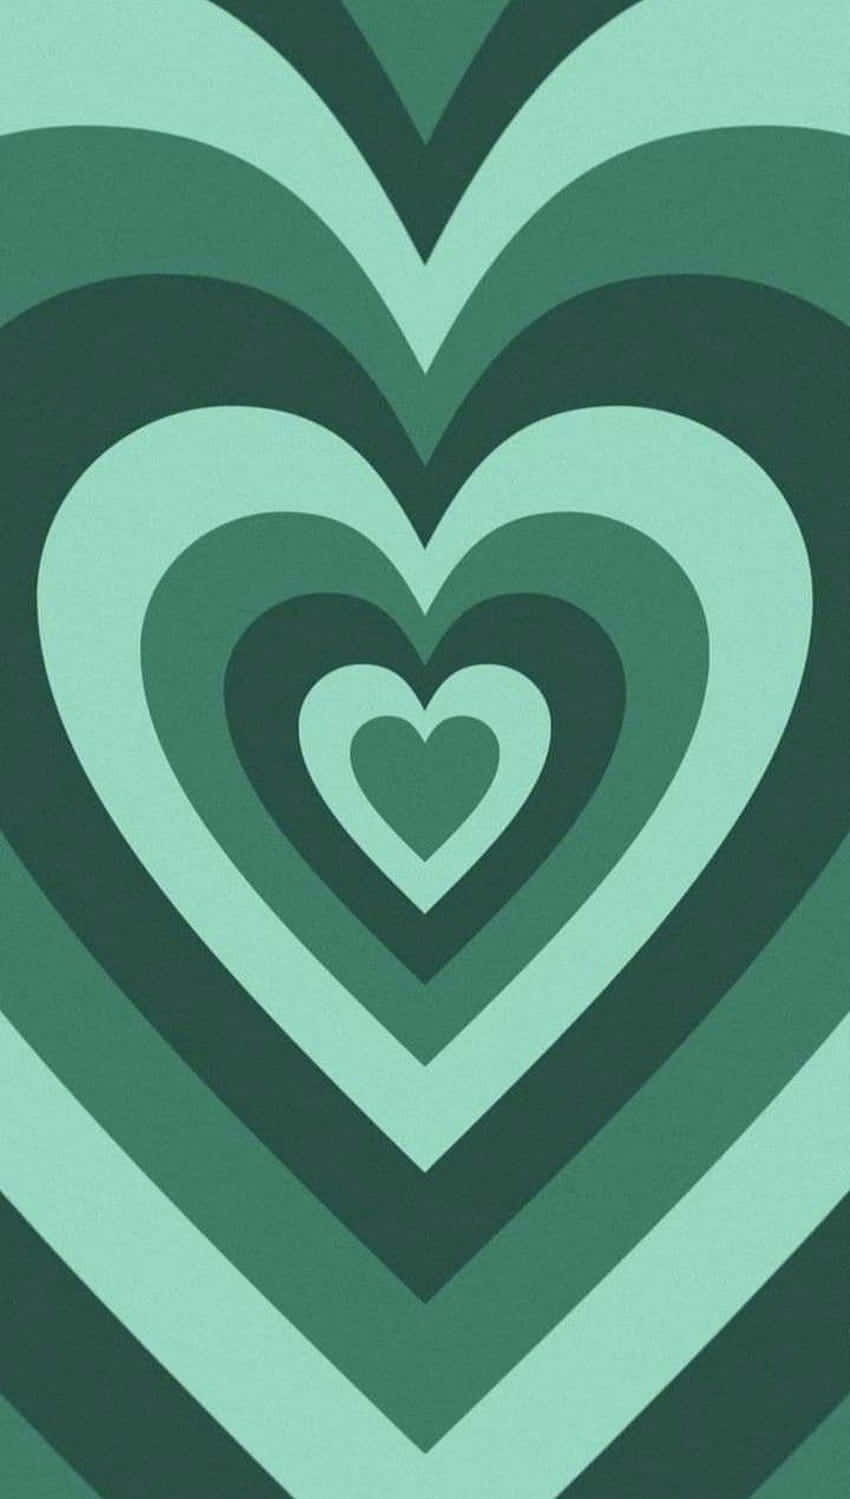 Zeigensie Ihre Liebe Mit Diesen Romantischen Minzgrünen Herzen Wallpaper